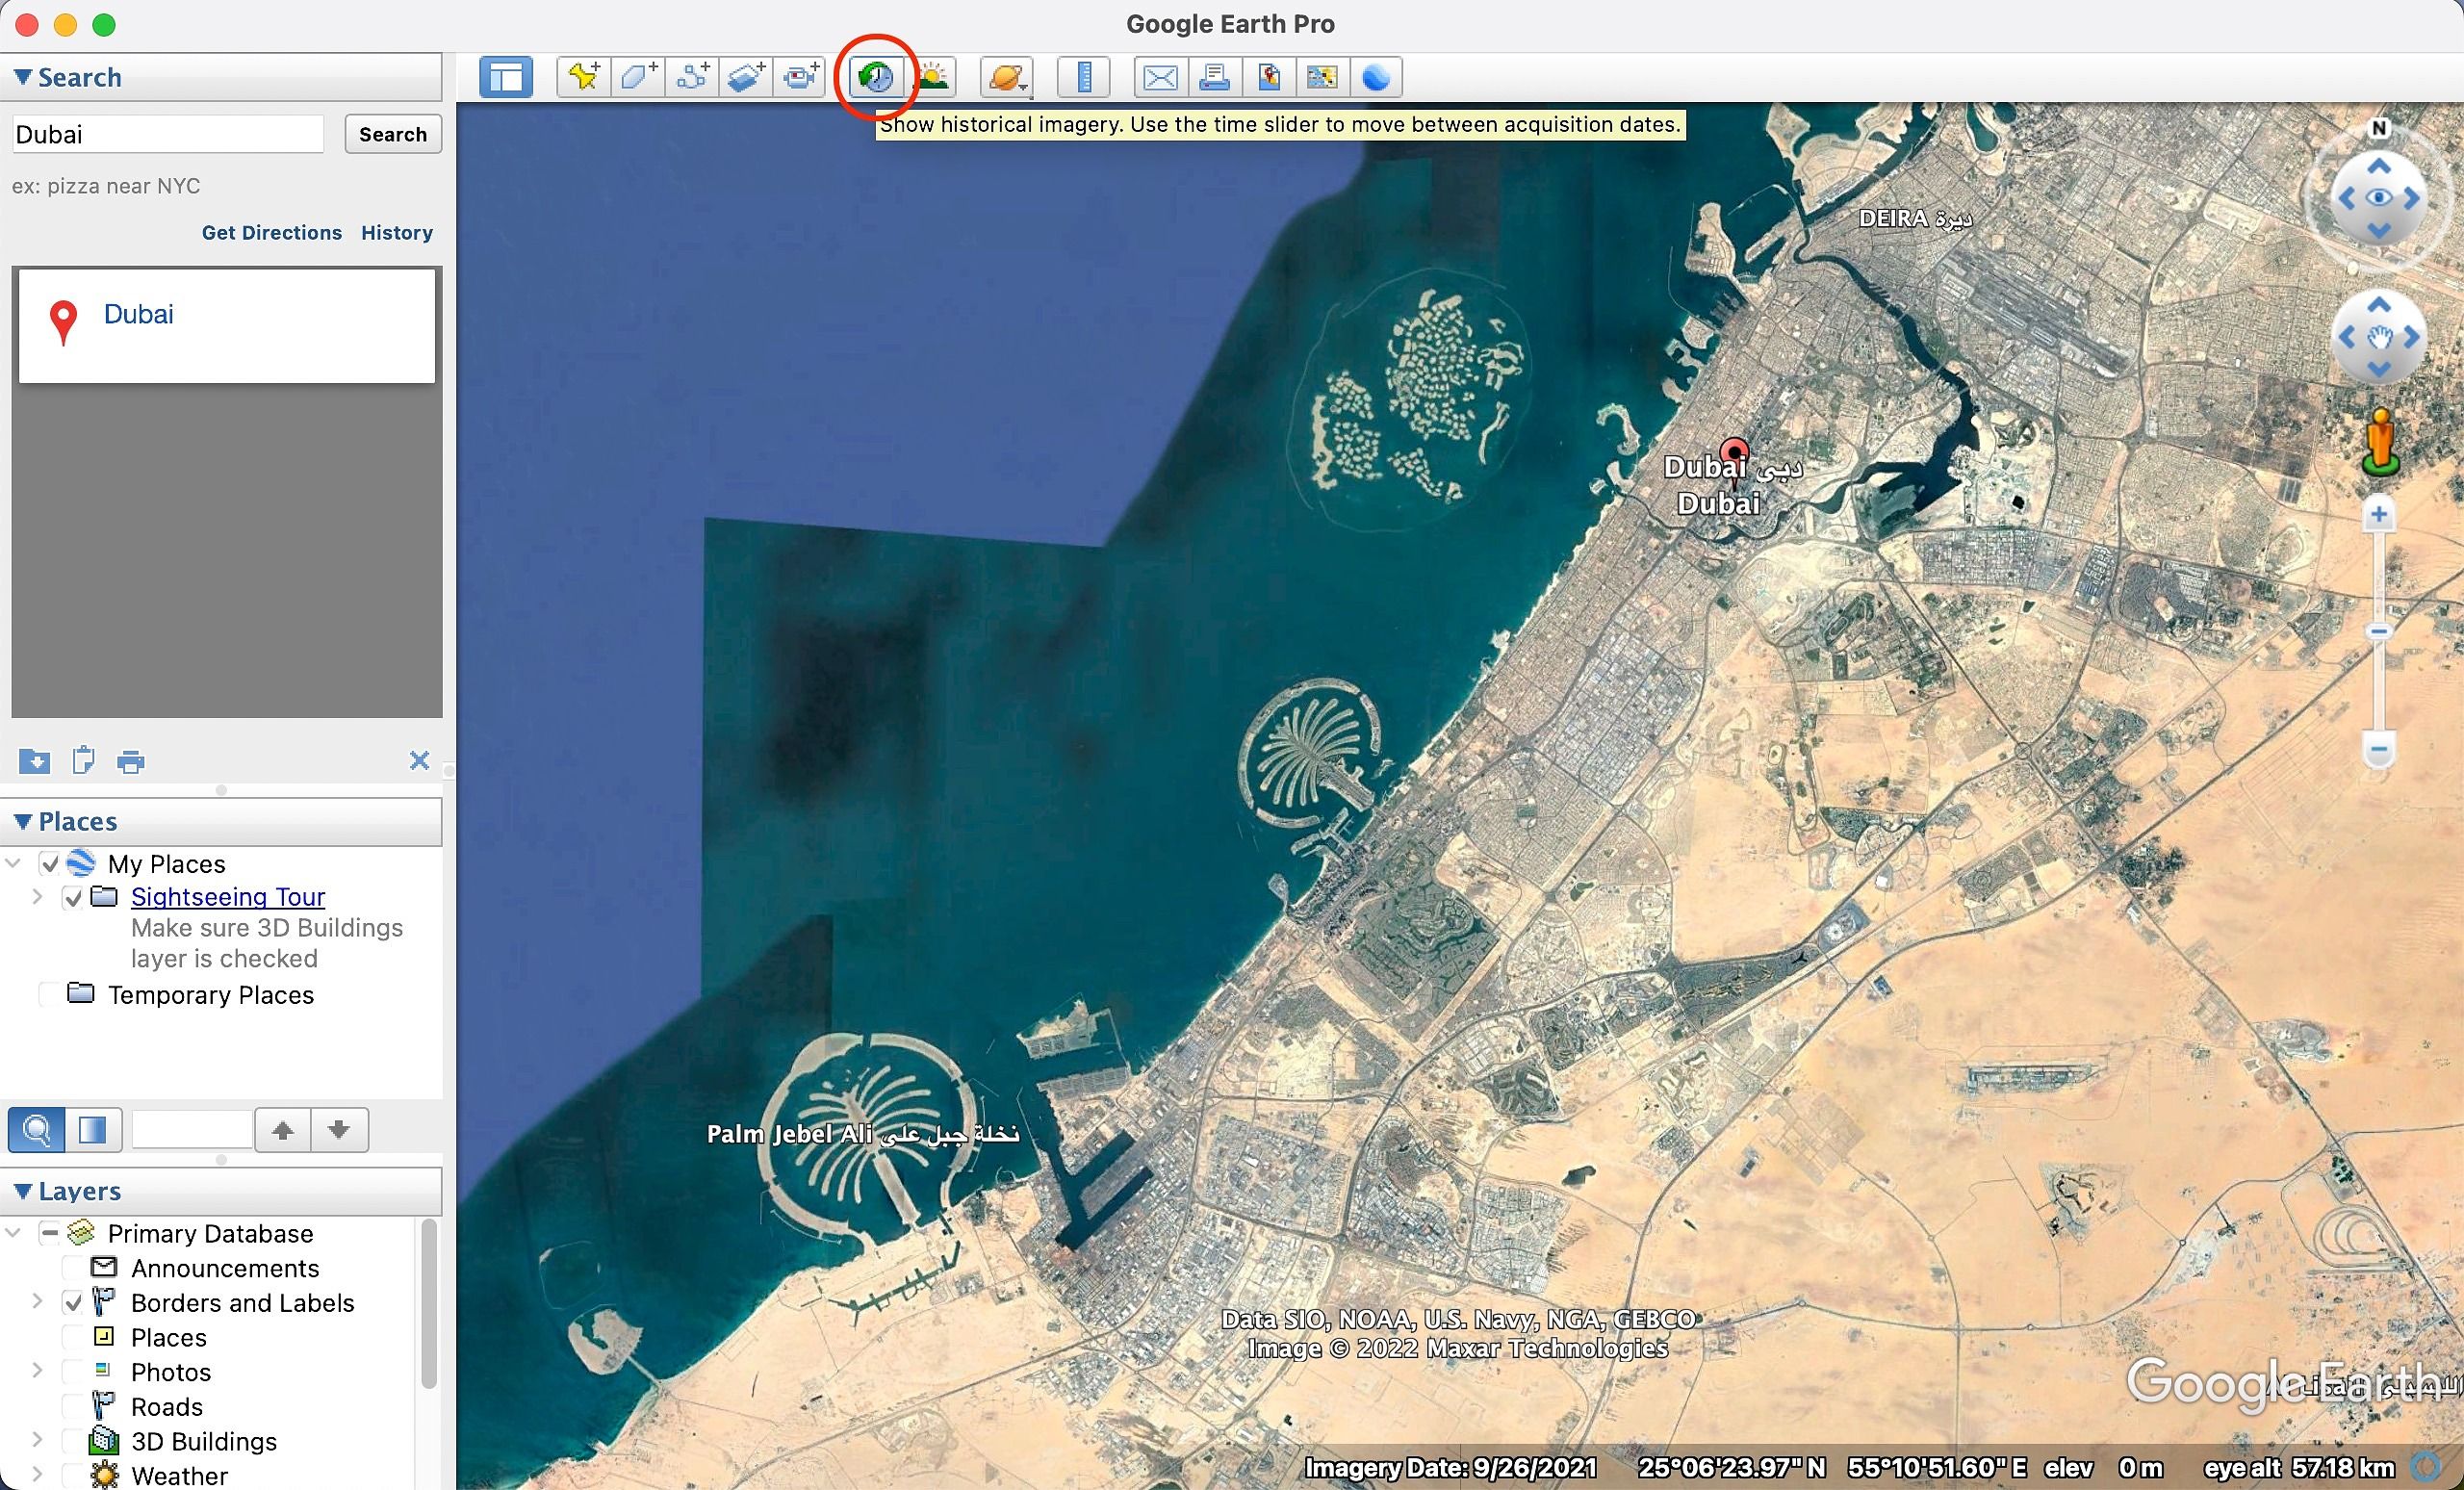 Captura de tela mostrando imagens históricas de Dubai no Google Earth Pro